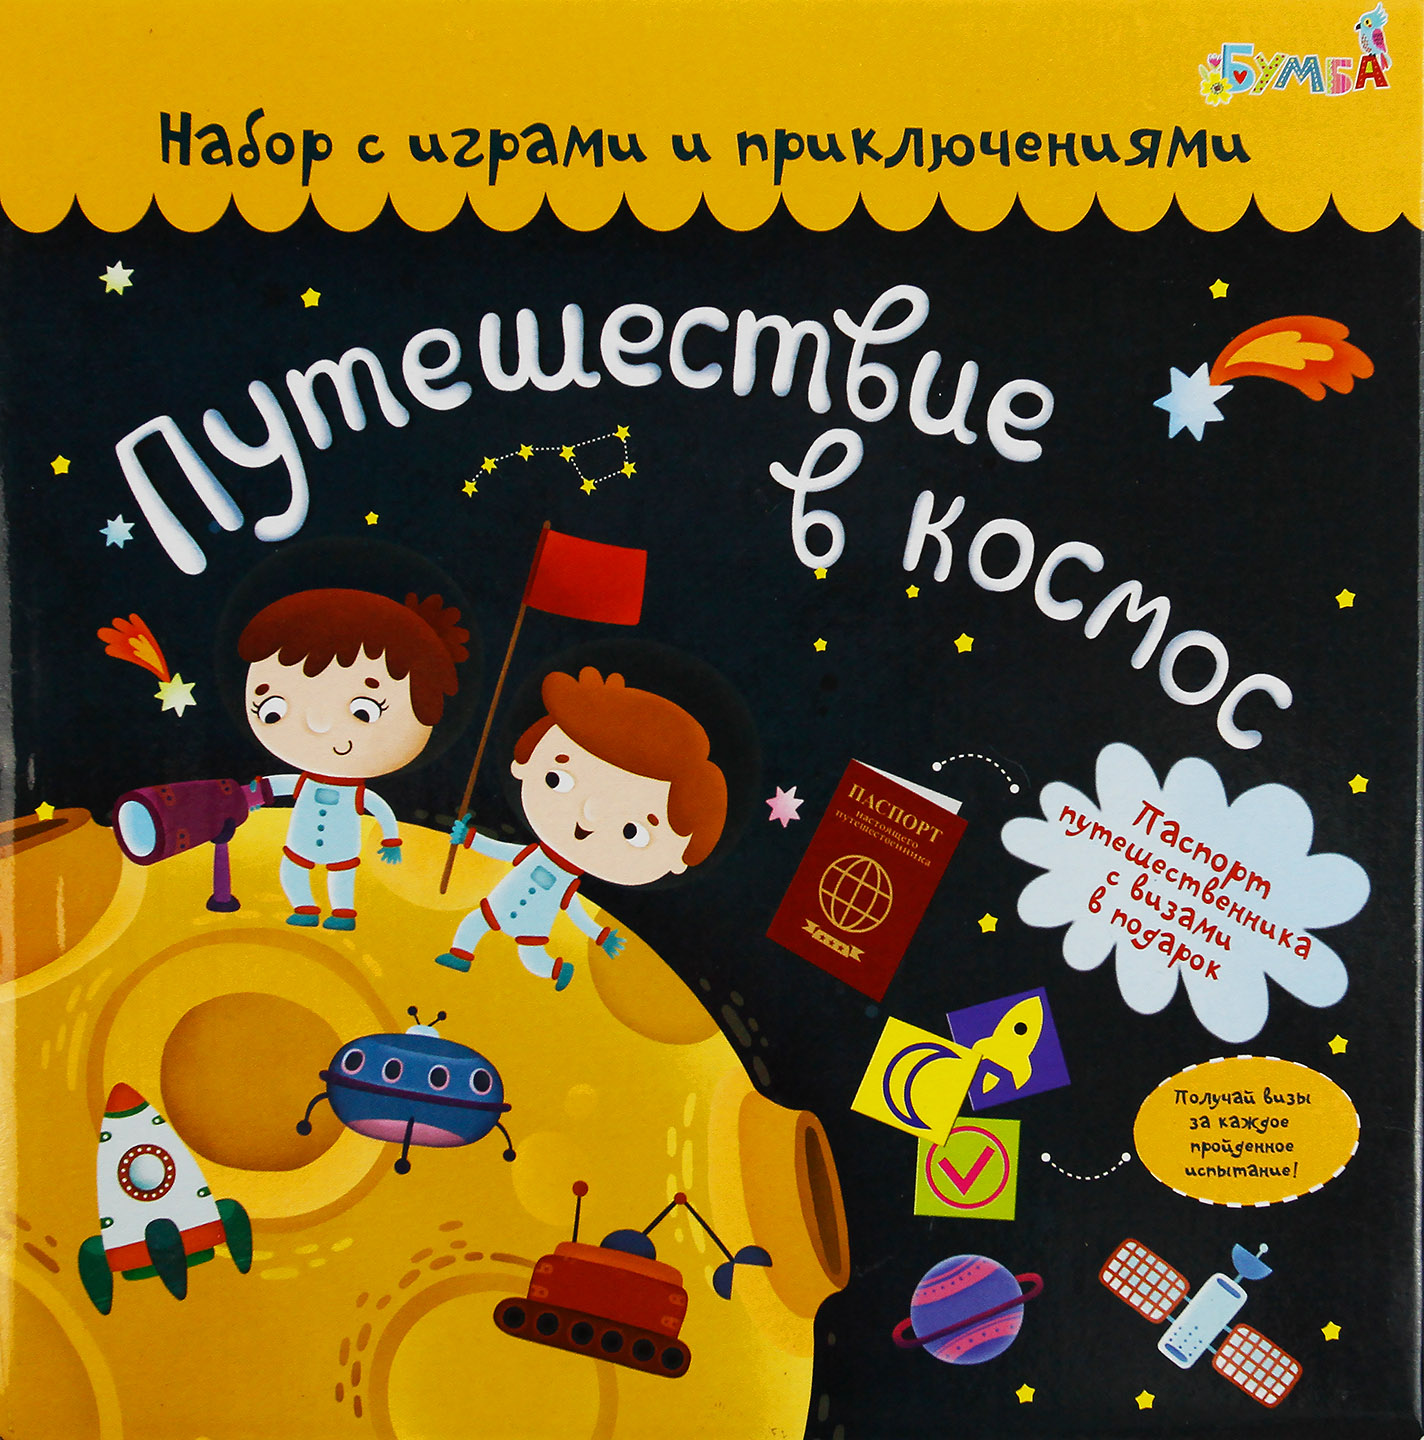 Набор с играми и развлечениями "Путешествие  в космос" tr-200